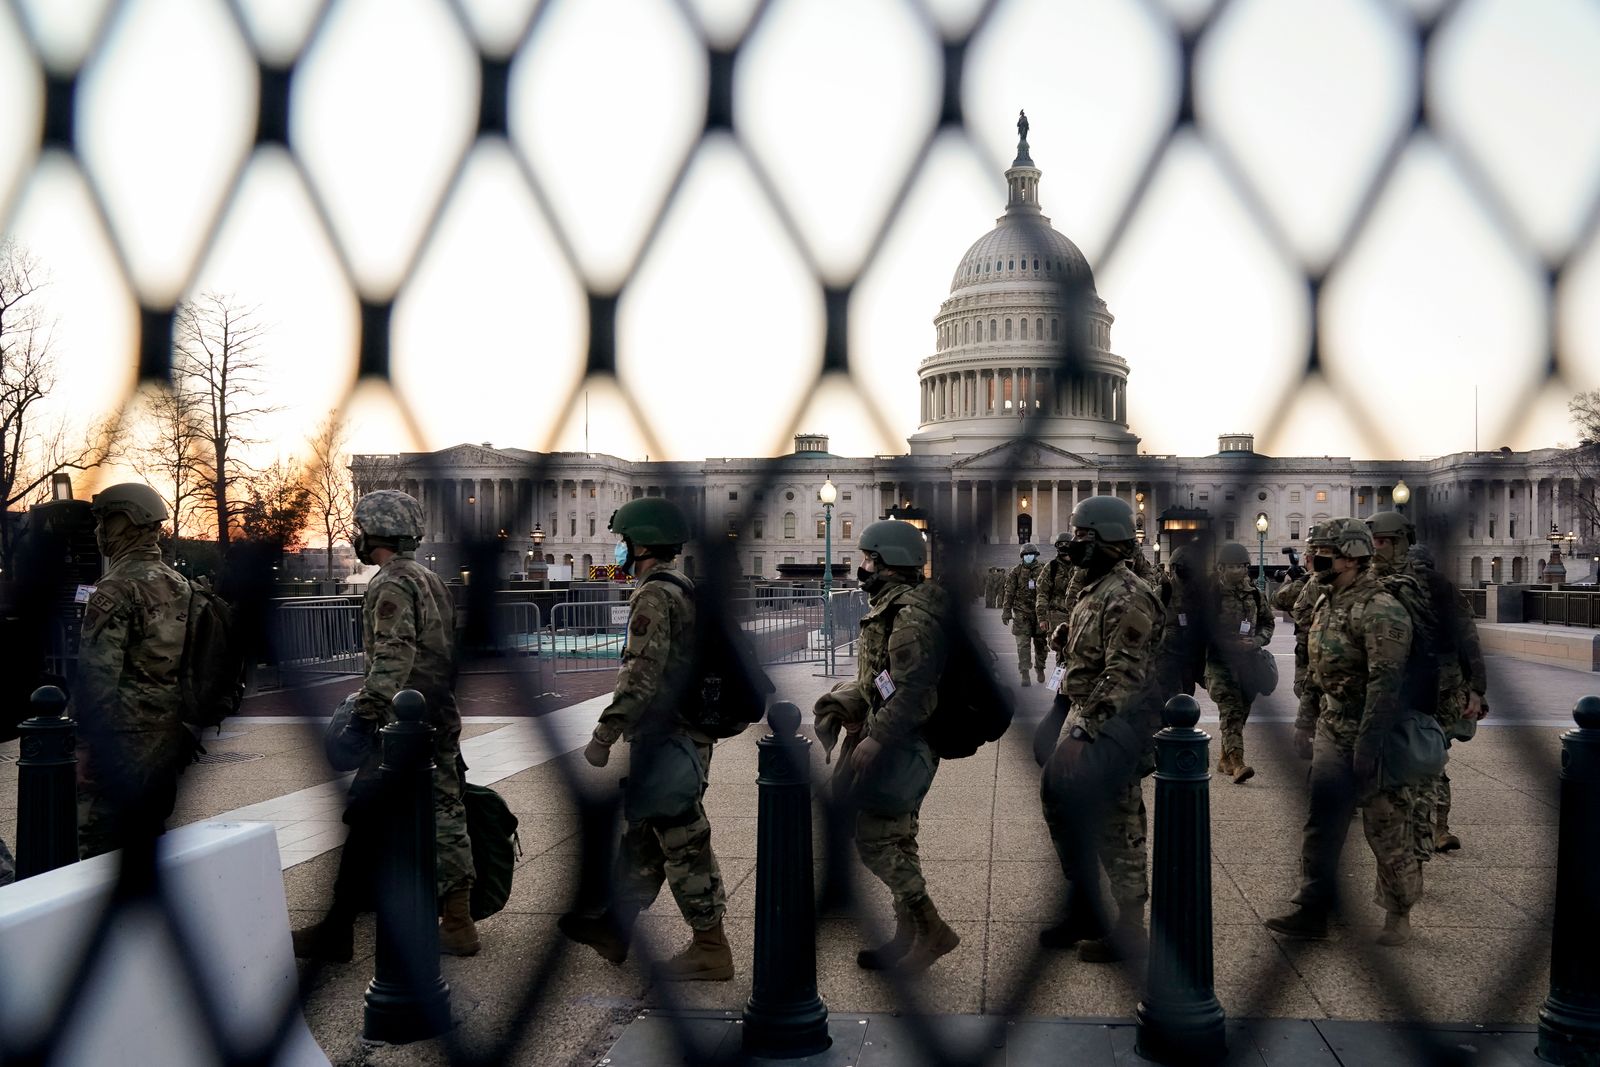 مجموعة من الحرس الوطني الأميركي تمر أمام السياج التي يتحصن بها مبنى الكابتيول - REUTERS